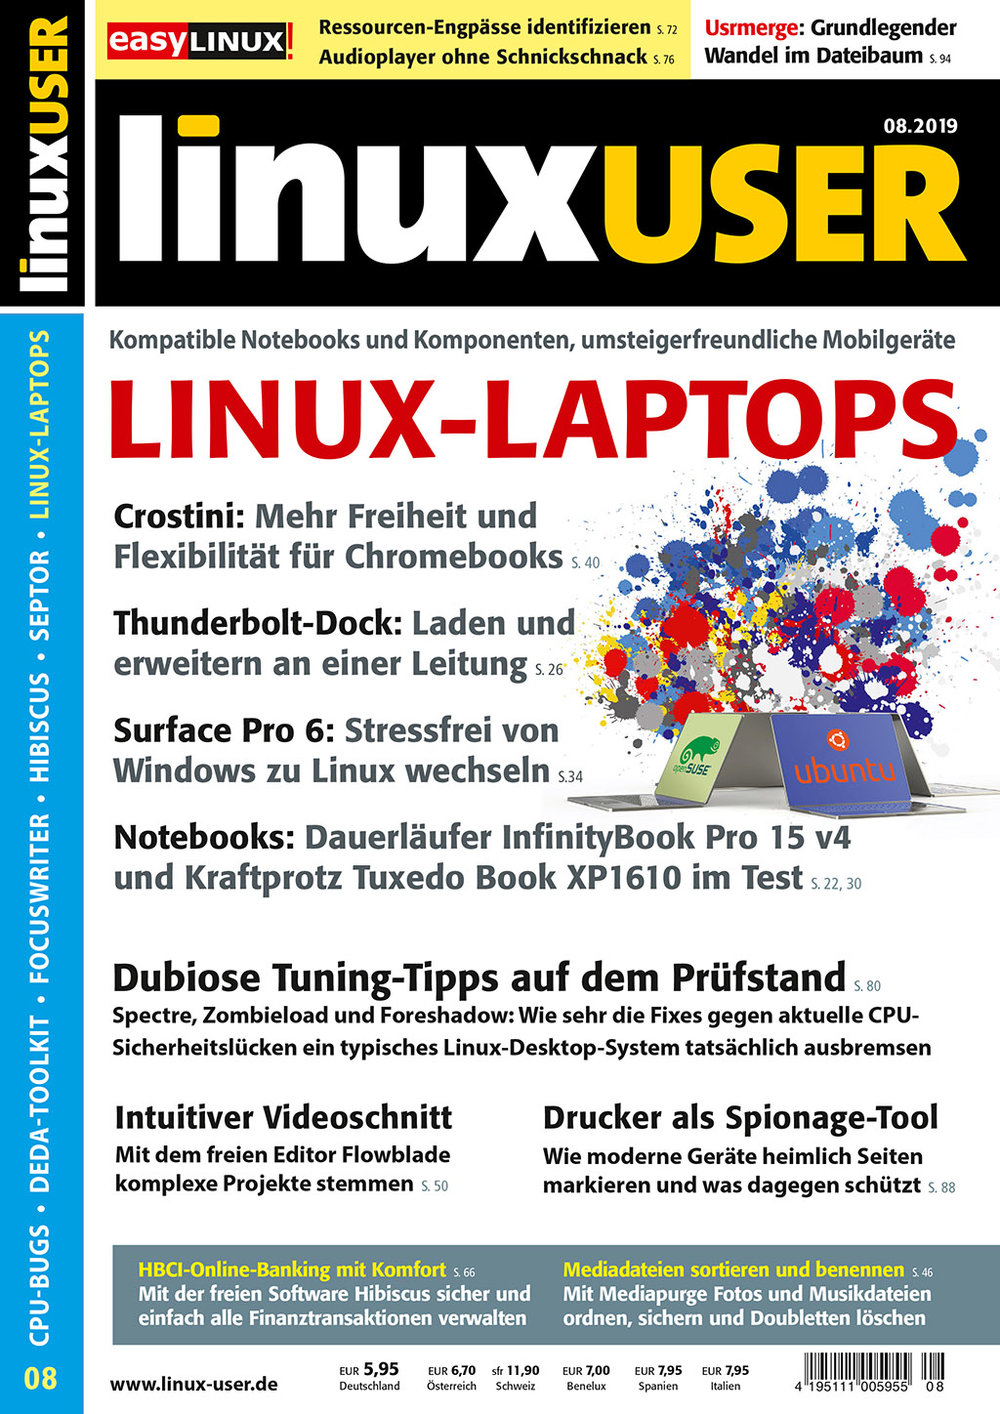 LinuxUser ePaper 08/2019